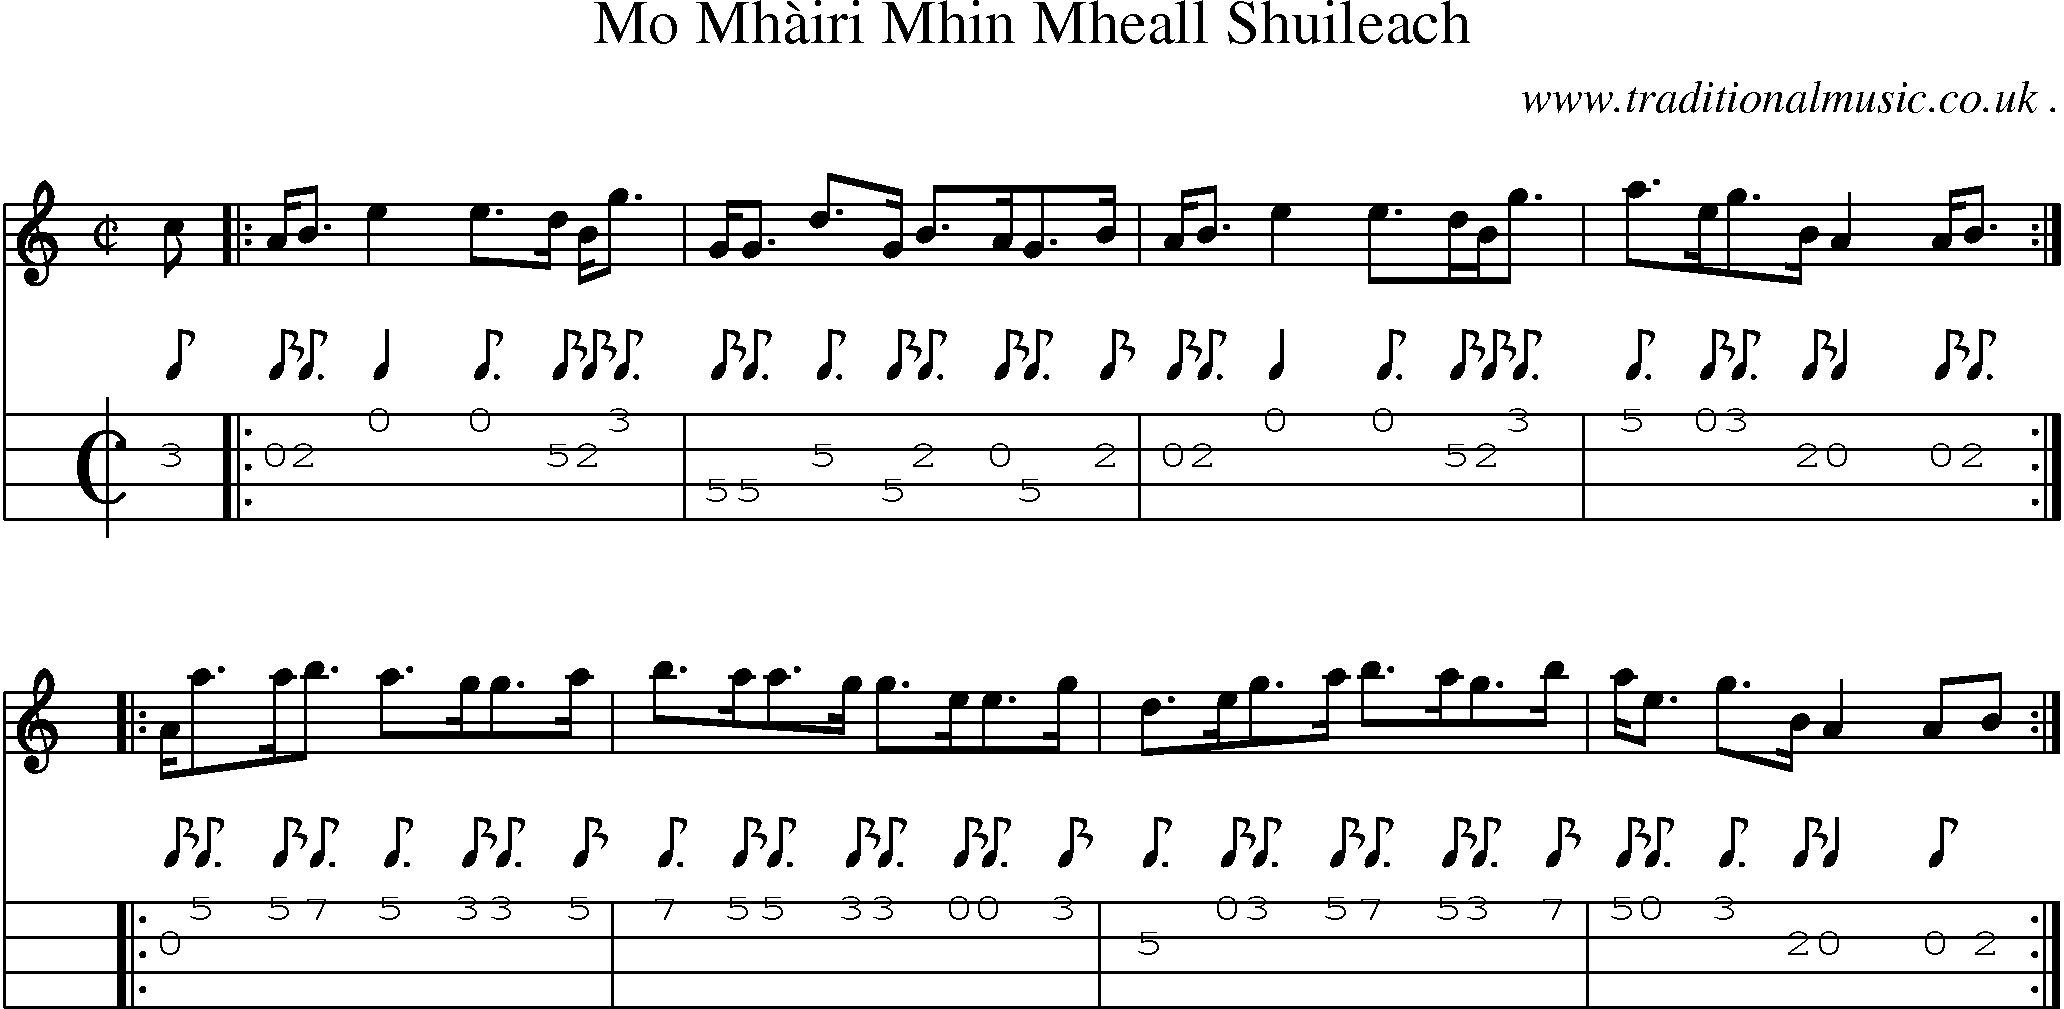 Sheet-music  score, Chords and Mandolin Tabs for Mo Mhairi Mhin Mheall Shuileach